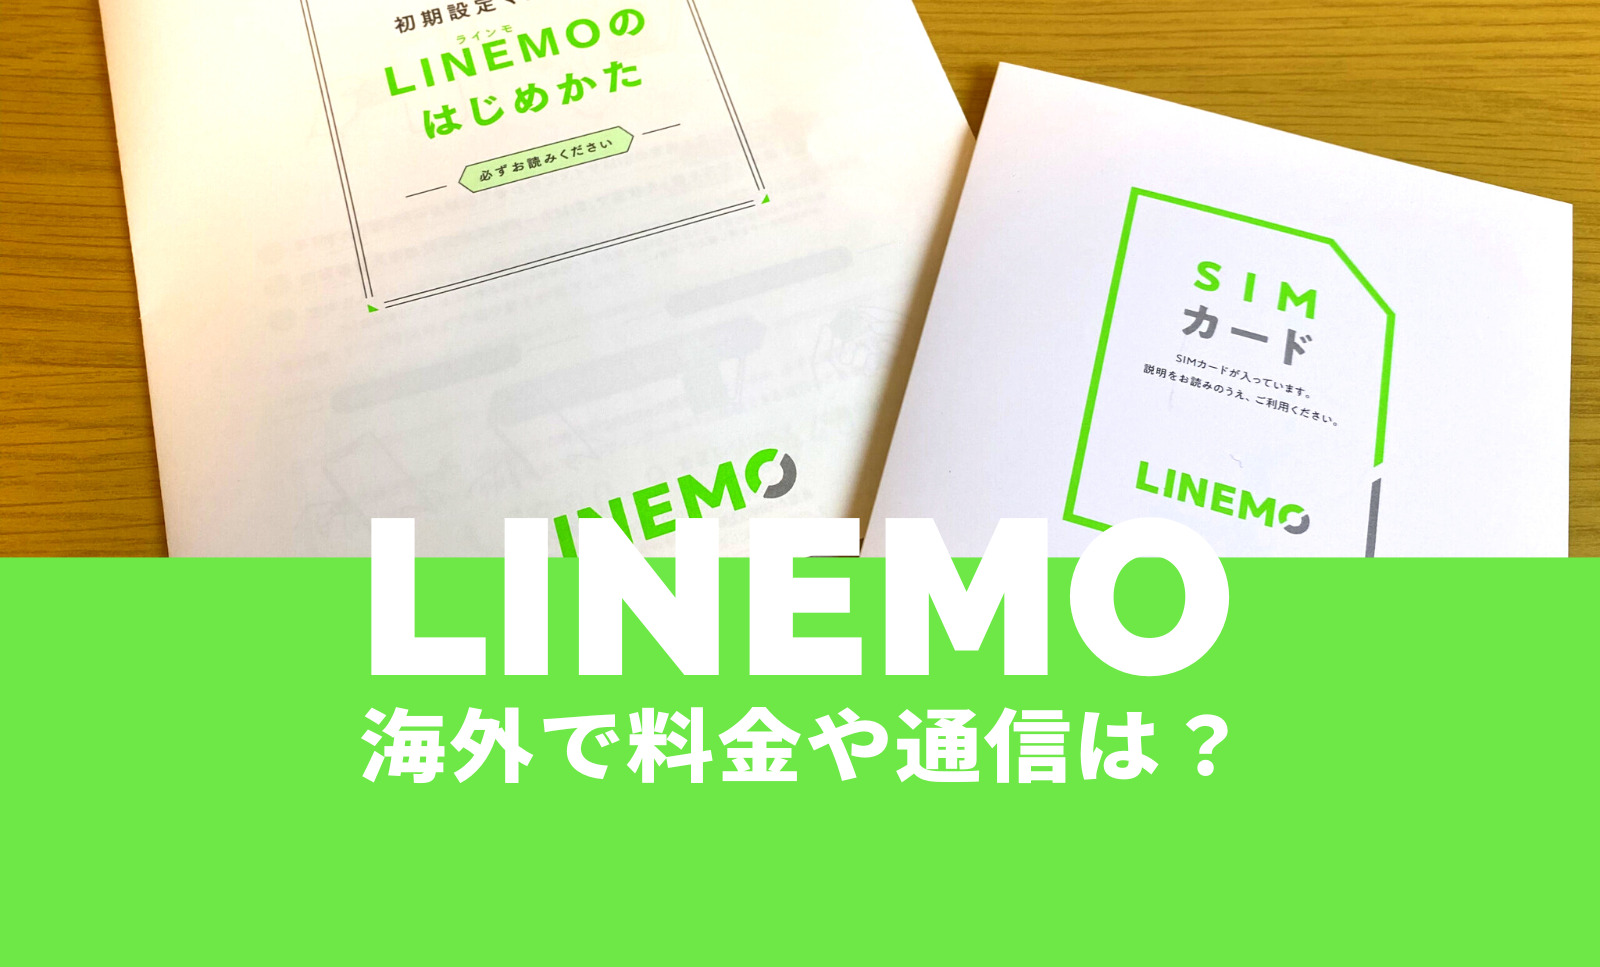 LINEMO(ラインモ)は海外旅行でローミングが使える&事前申込で料金がお得に。のサムネイル画像